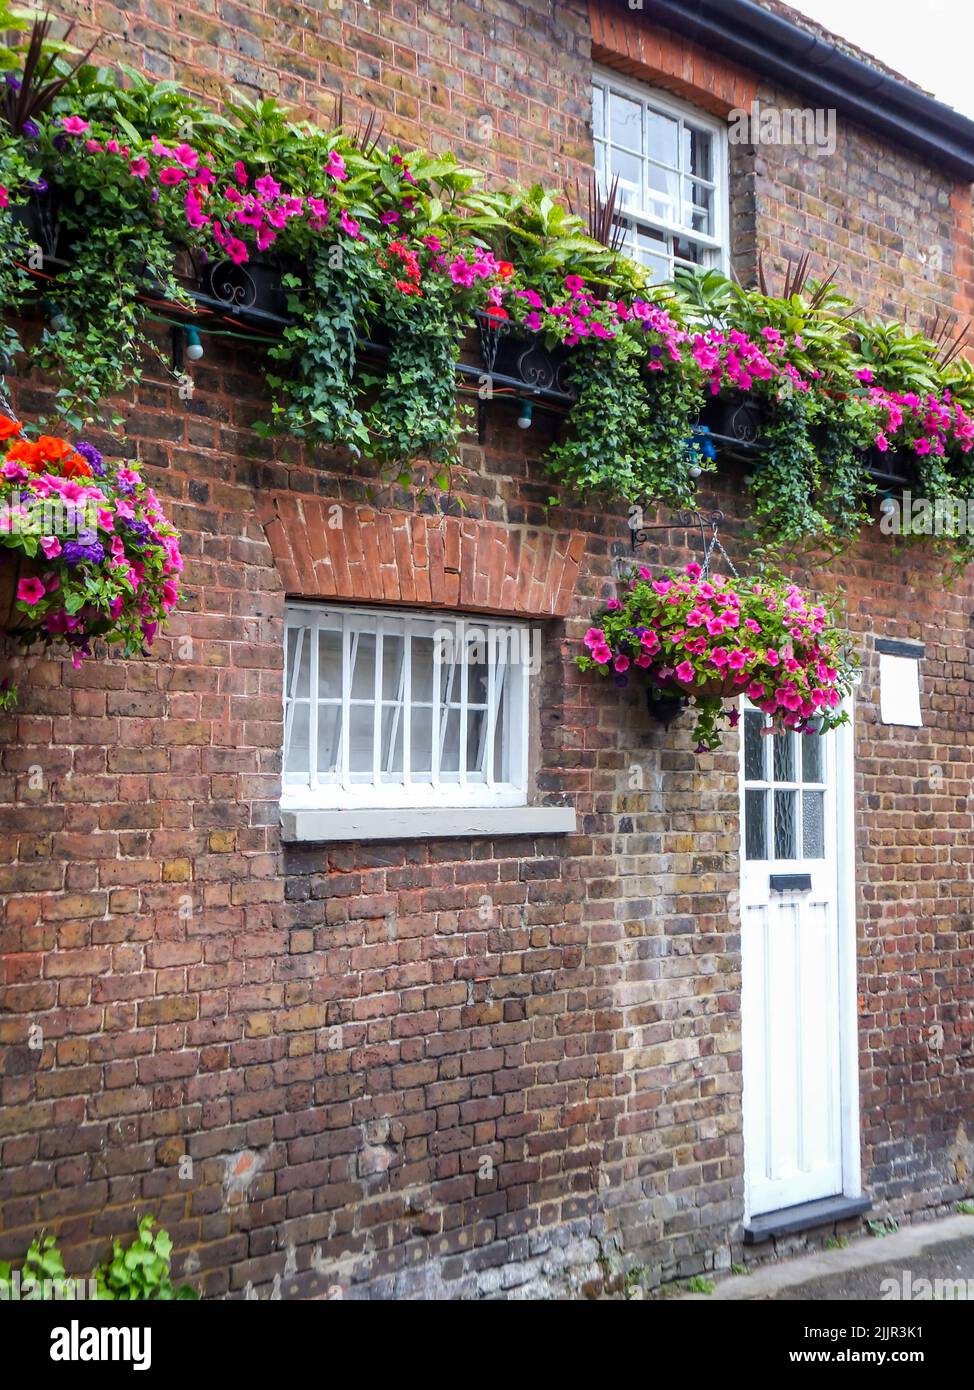 De belles fleurs pétunia suspendues ornent le mur de briques extérieur de Harmondsworth Hall à Harmondsworth, Hillingdon, Middlesex, Londres, Angleterre, ROYAUME-UNI Banque D'Images